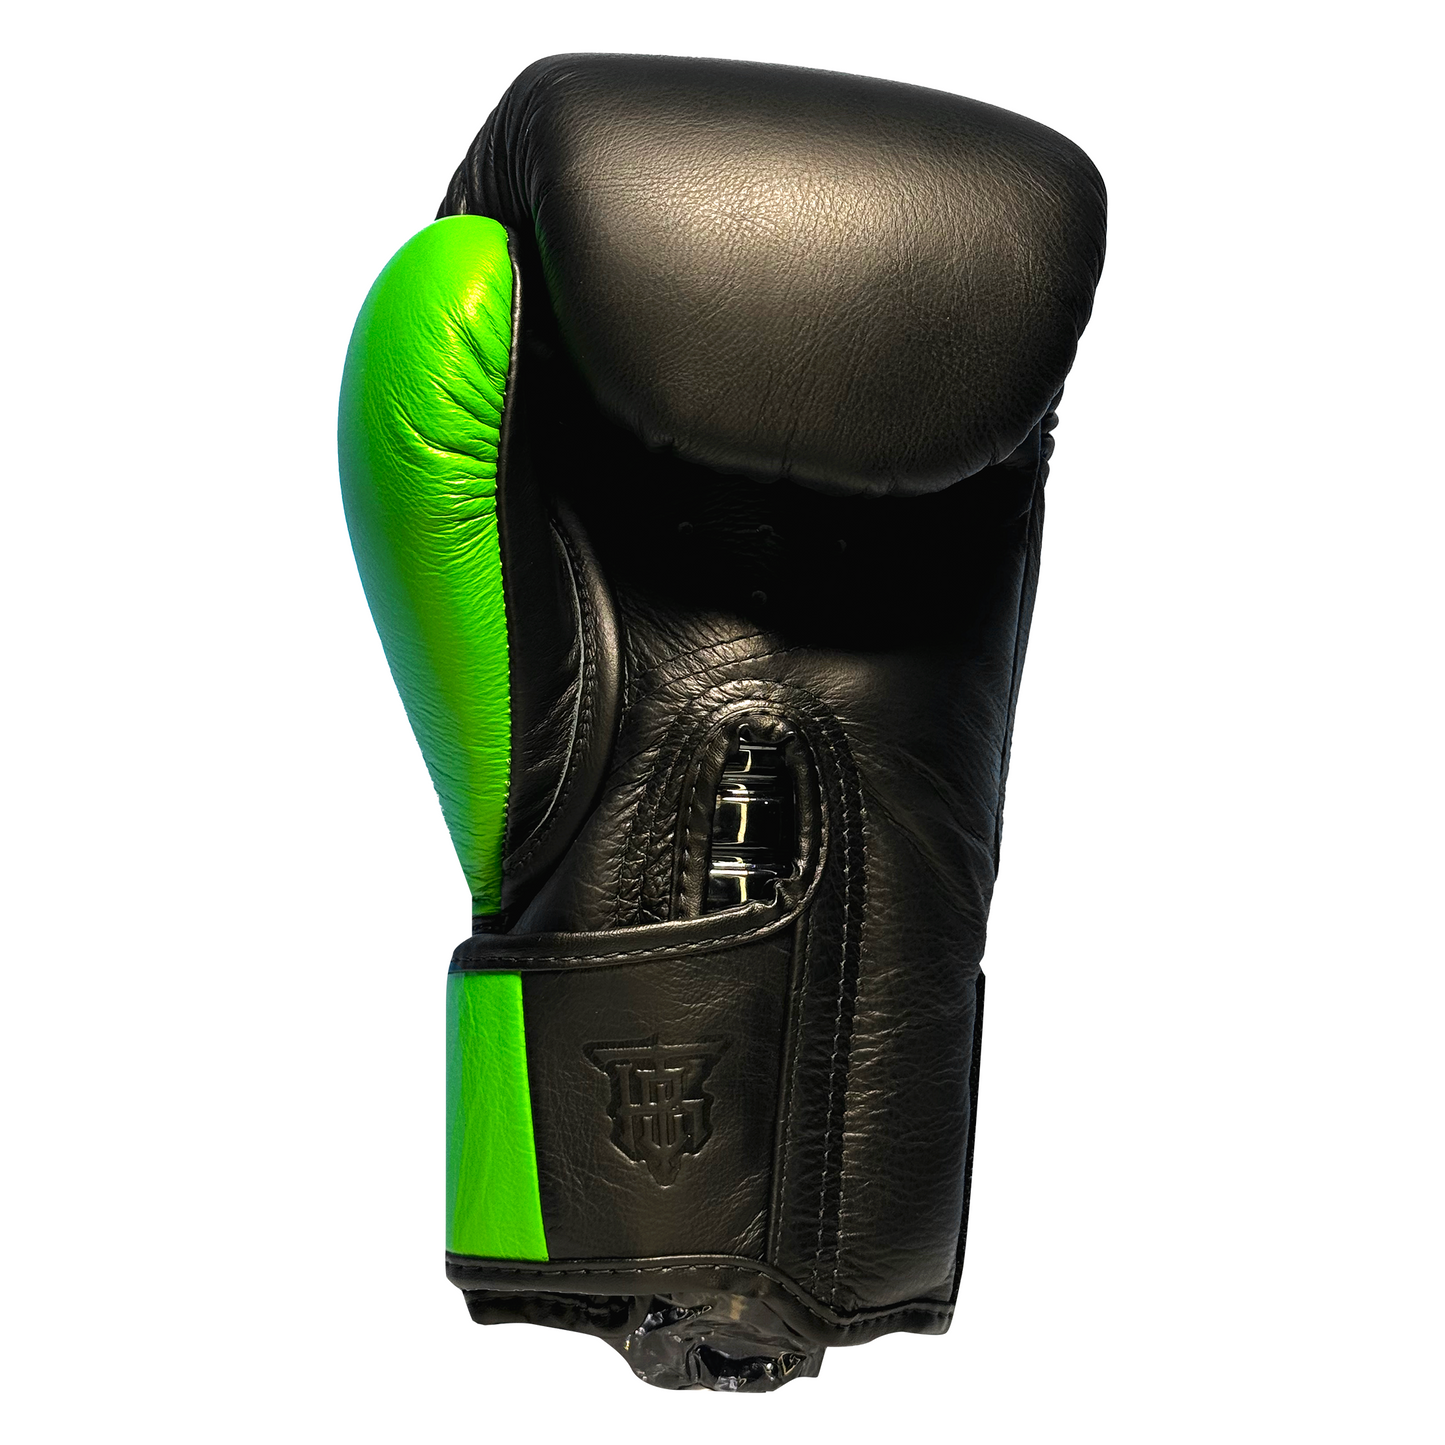 Top King Boxhandschuhe "Power" schwarz/grün